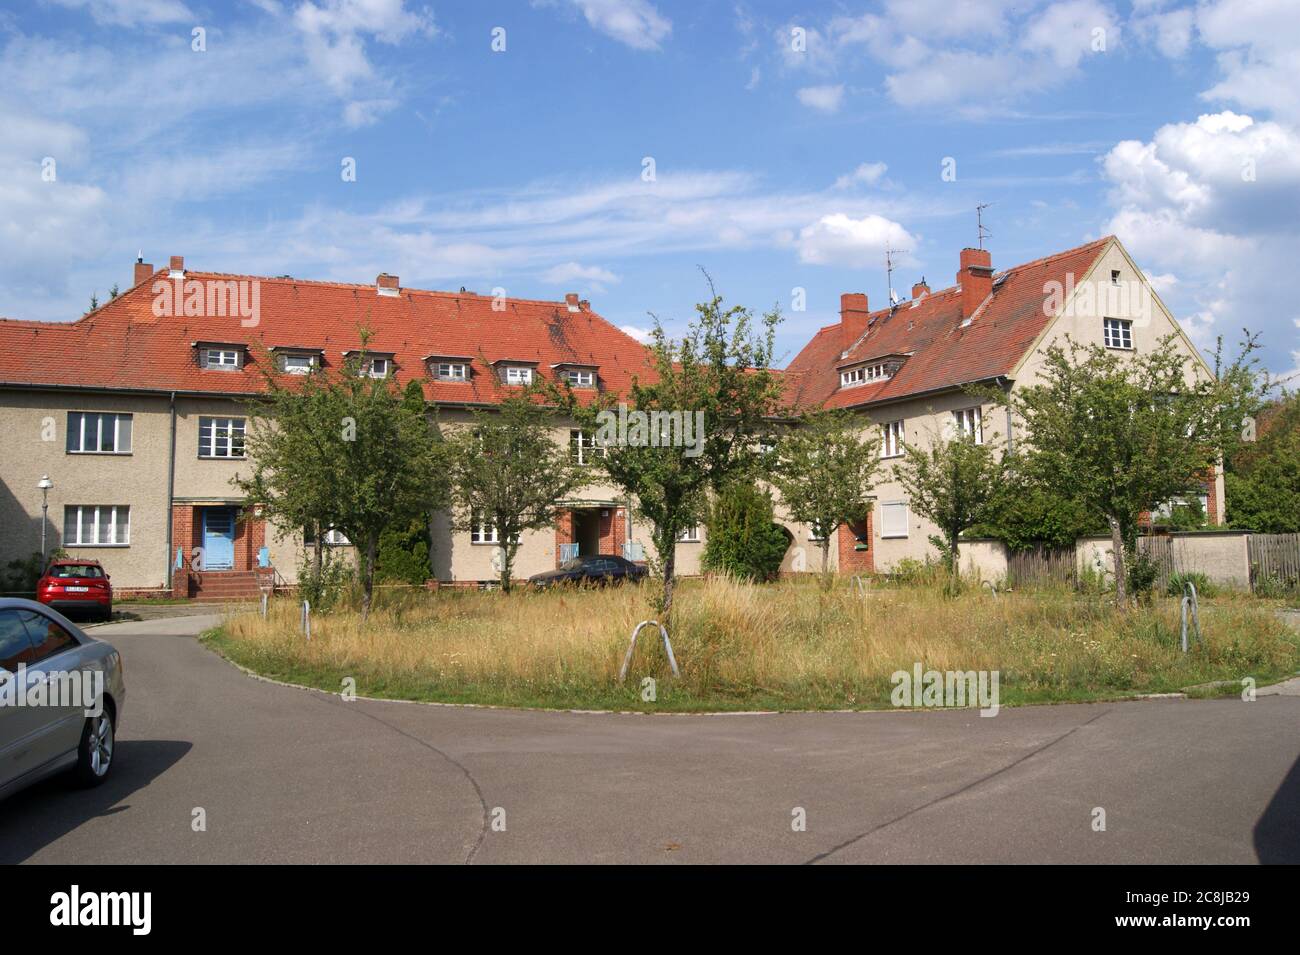 Die zwischen 1914 und 1917 nach den Entwürfen des Architekten Schmitthenner errichtete Gartenstadt Staaken in Berlin-Spandau.Hier: Ungewitterweg Foto Stock